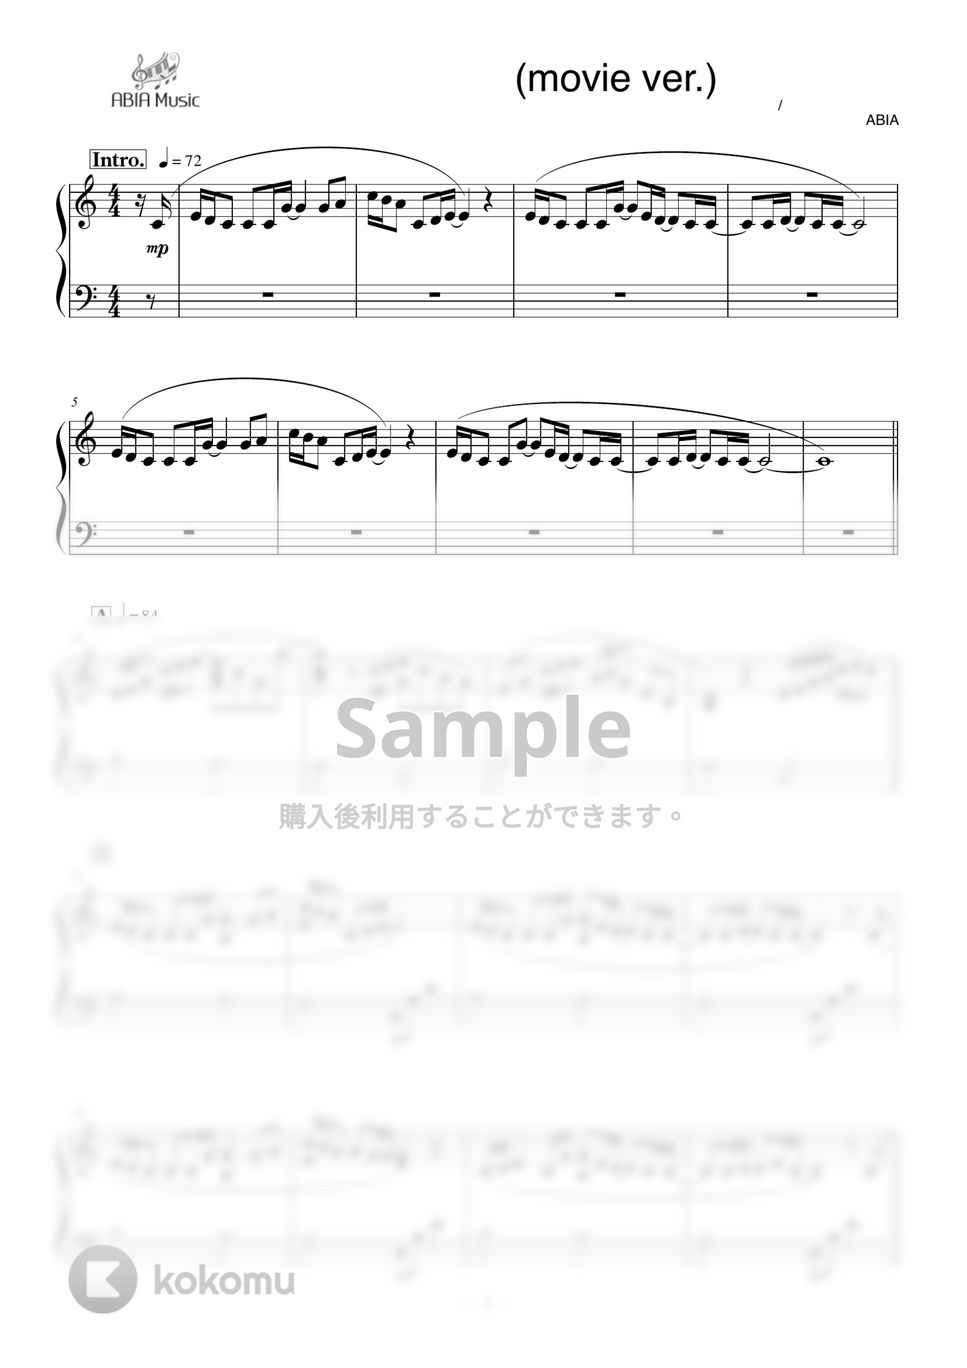 上白石萌音 - なんでもないや(movie ver.) by ABIA Music